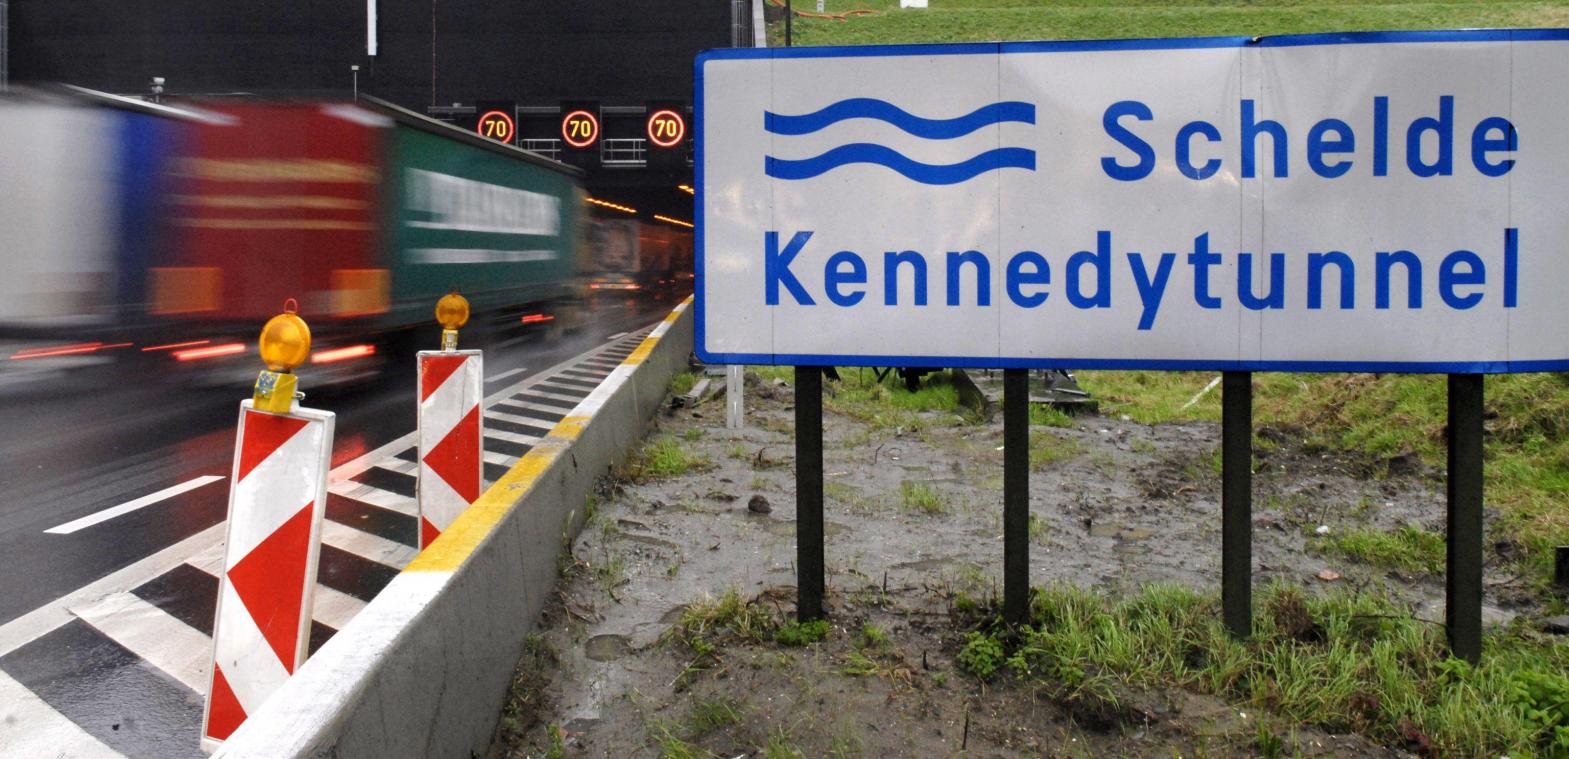 Kennedytunnel en vier andere tunnels krijgen... slagbomen